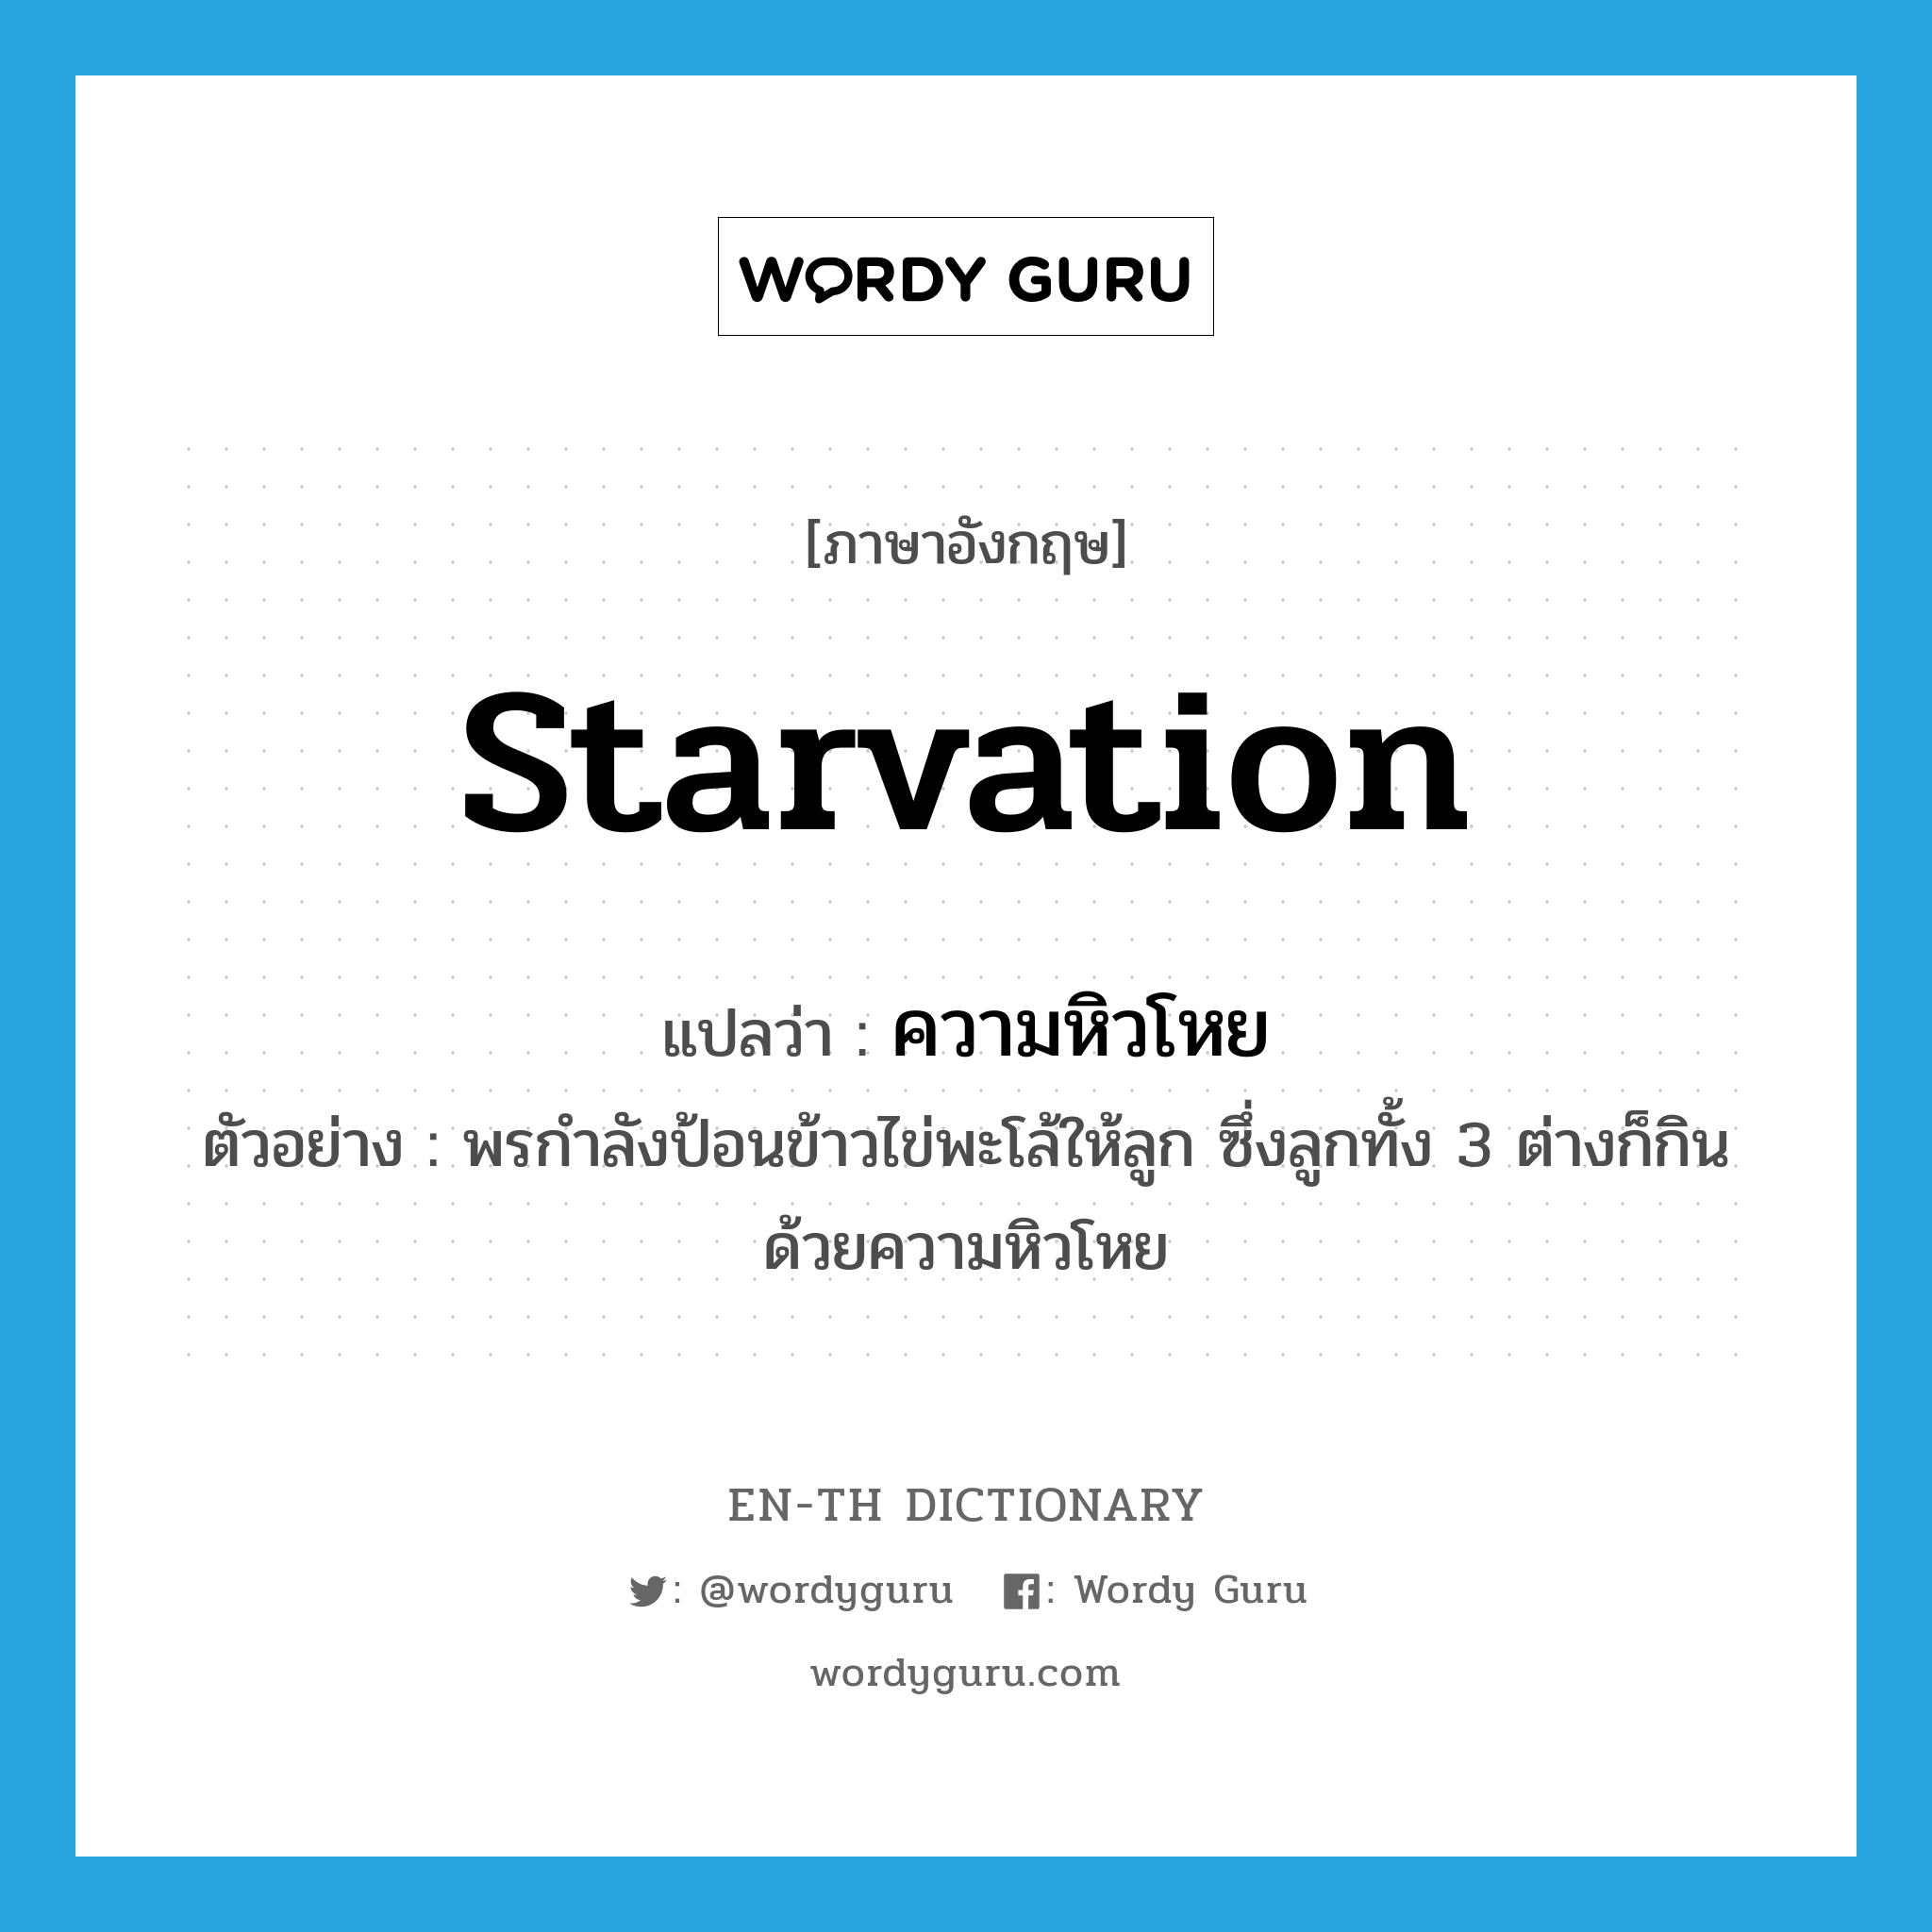 ความหิวโหย ภาษาอังกฤษ?, คำศัพท์ภาษาอังกฤษ ความหิวโหย แปลว่า starvation ประเภท N ตัวอย่าง พรกำลังป้อนข้าวไข่พะโล้ให้ลูก ซึ่งลูกทั้ง 3 ต่างก็กินด้วยความหิวโหย หมวด N